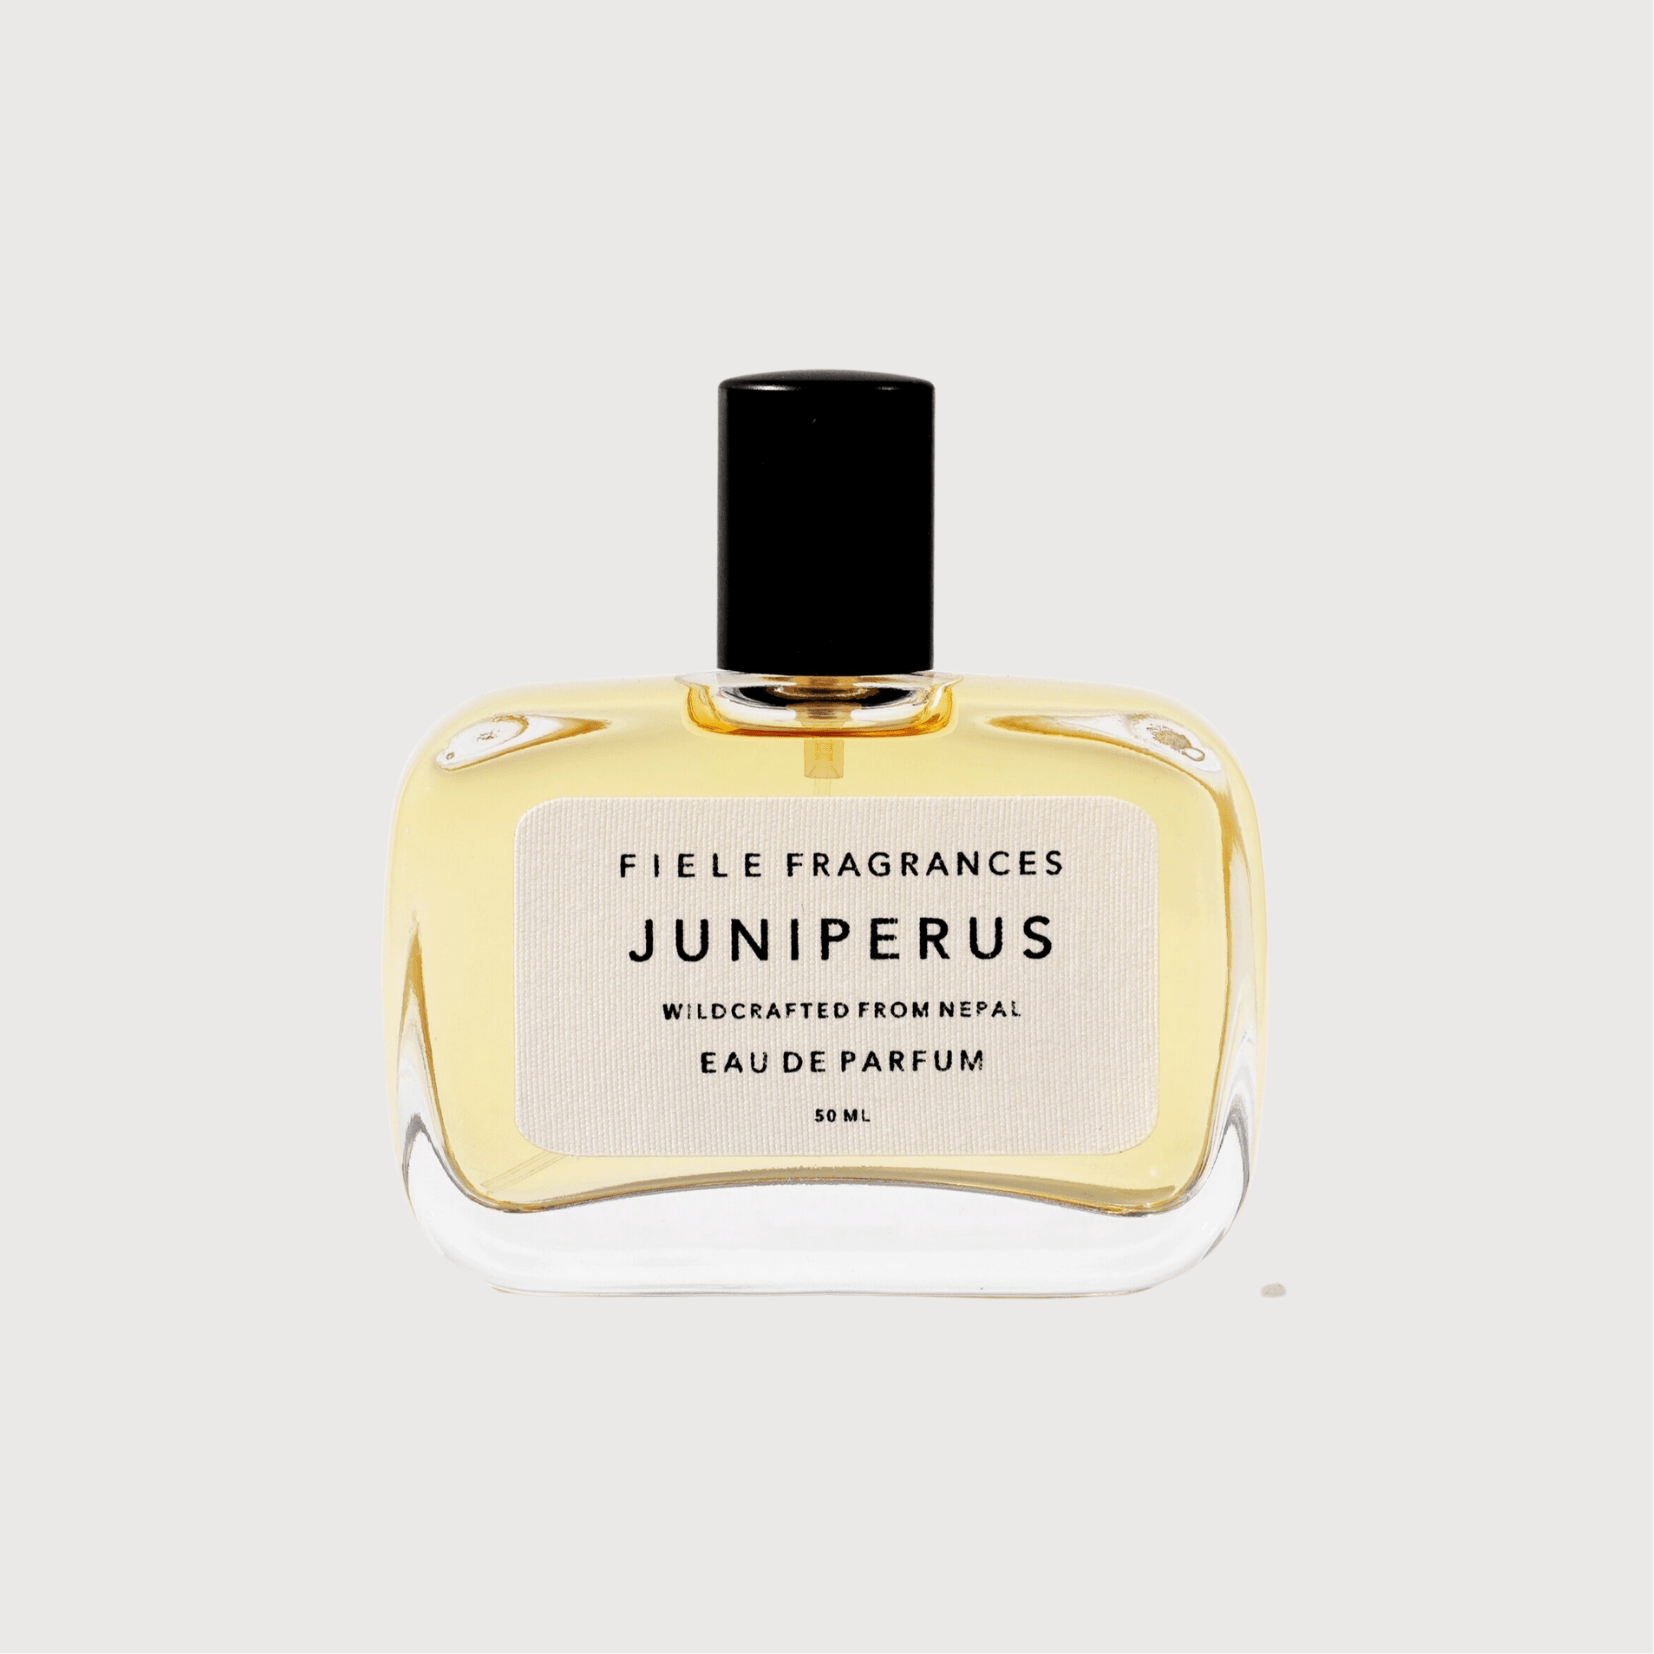 Juniperus eau de parfum by Fiele Fragrance – Haven